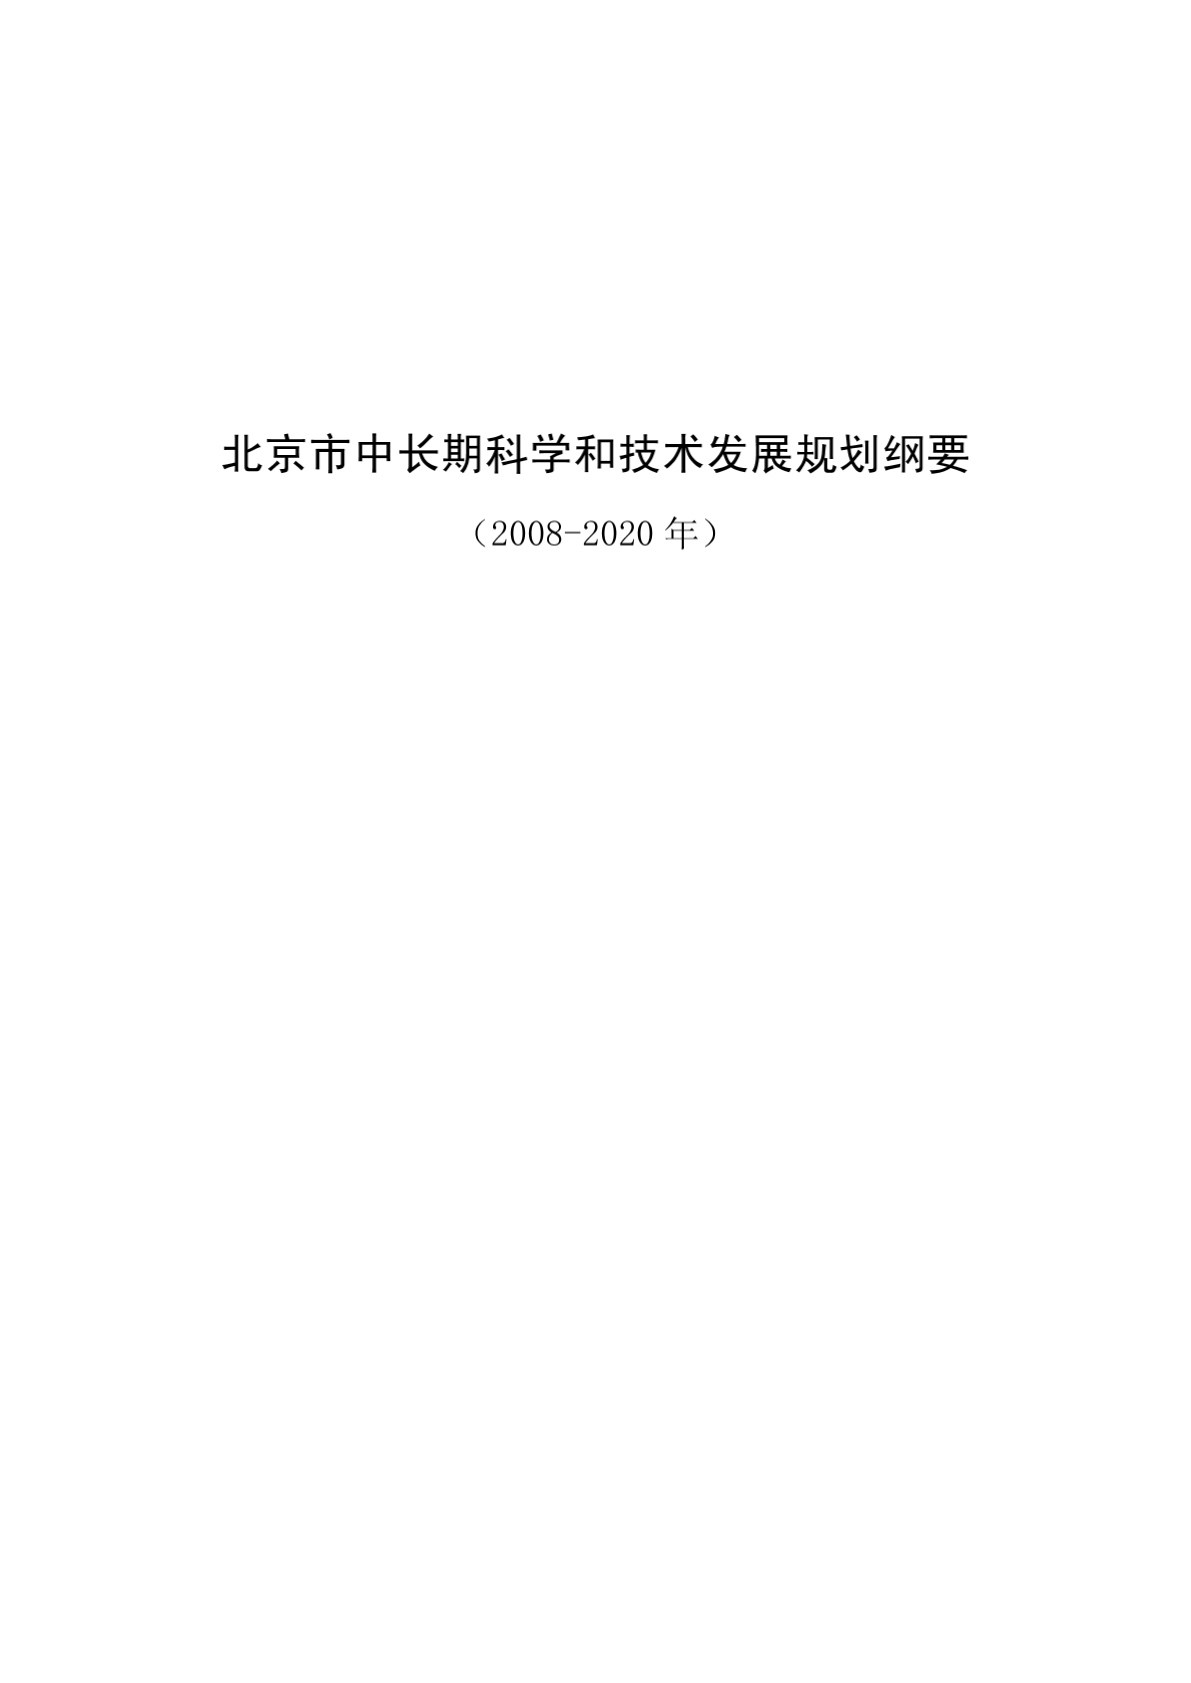 北京市中长期科学和技术发展规划纲要-图二